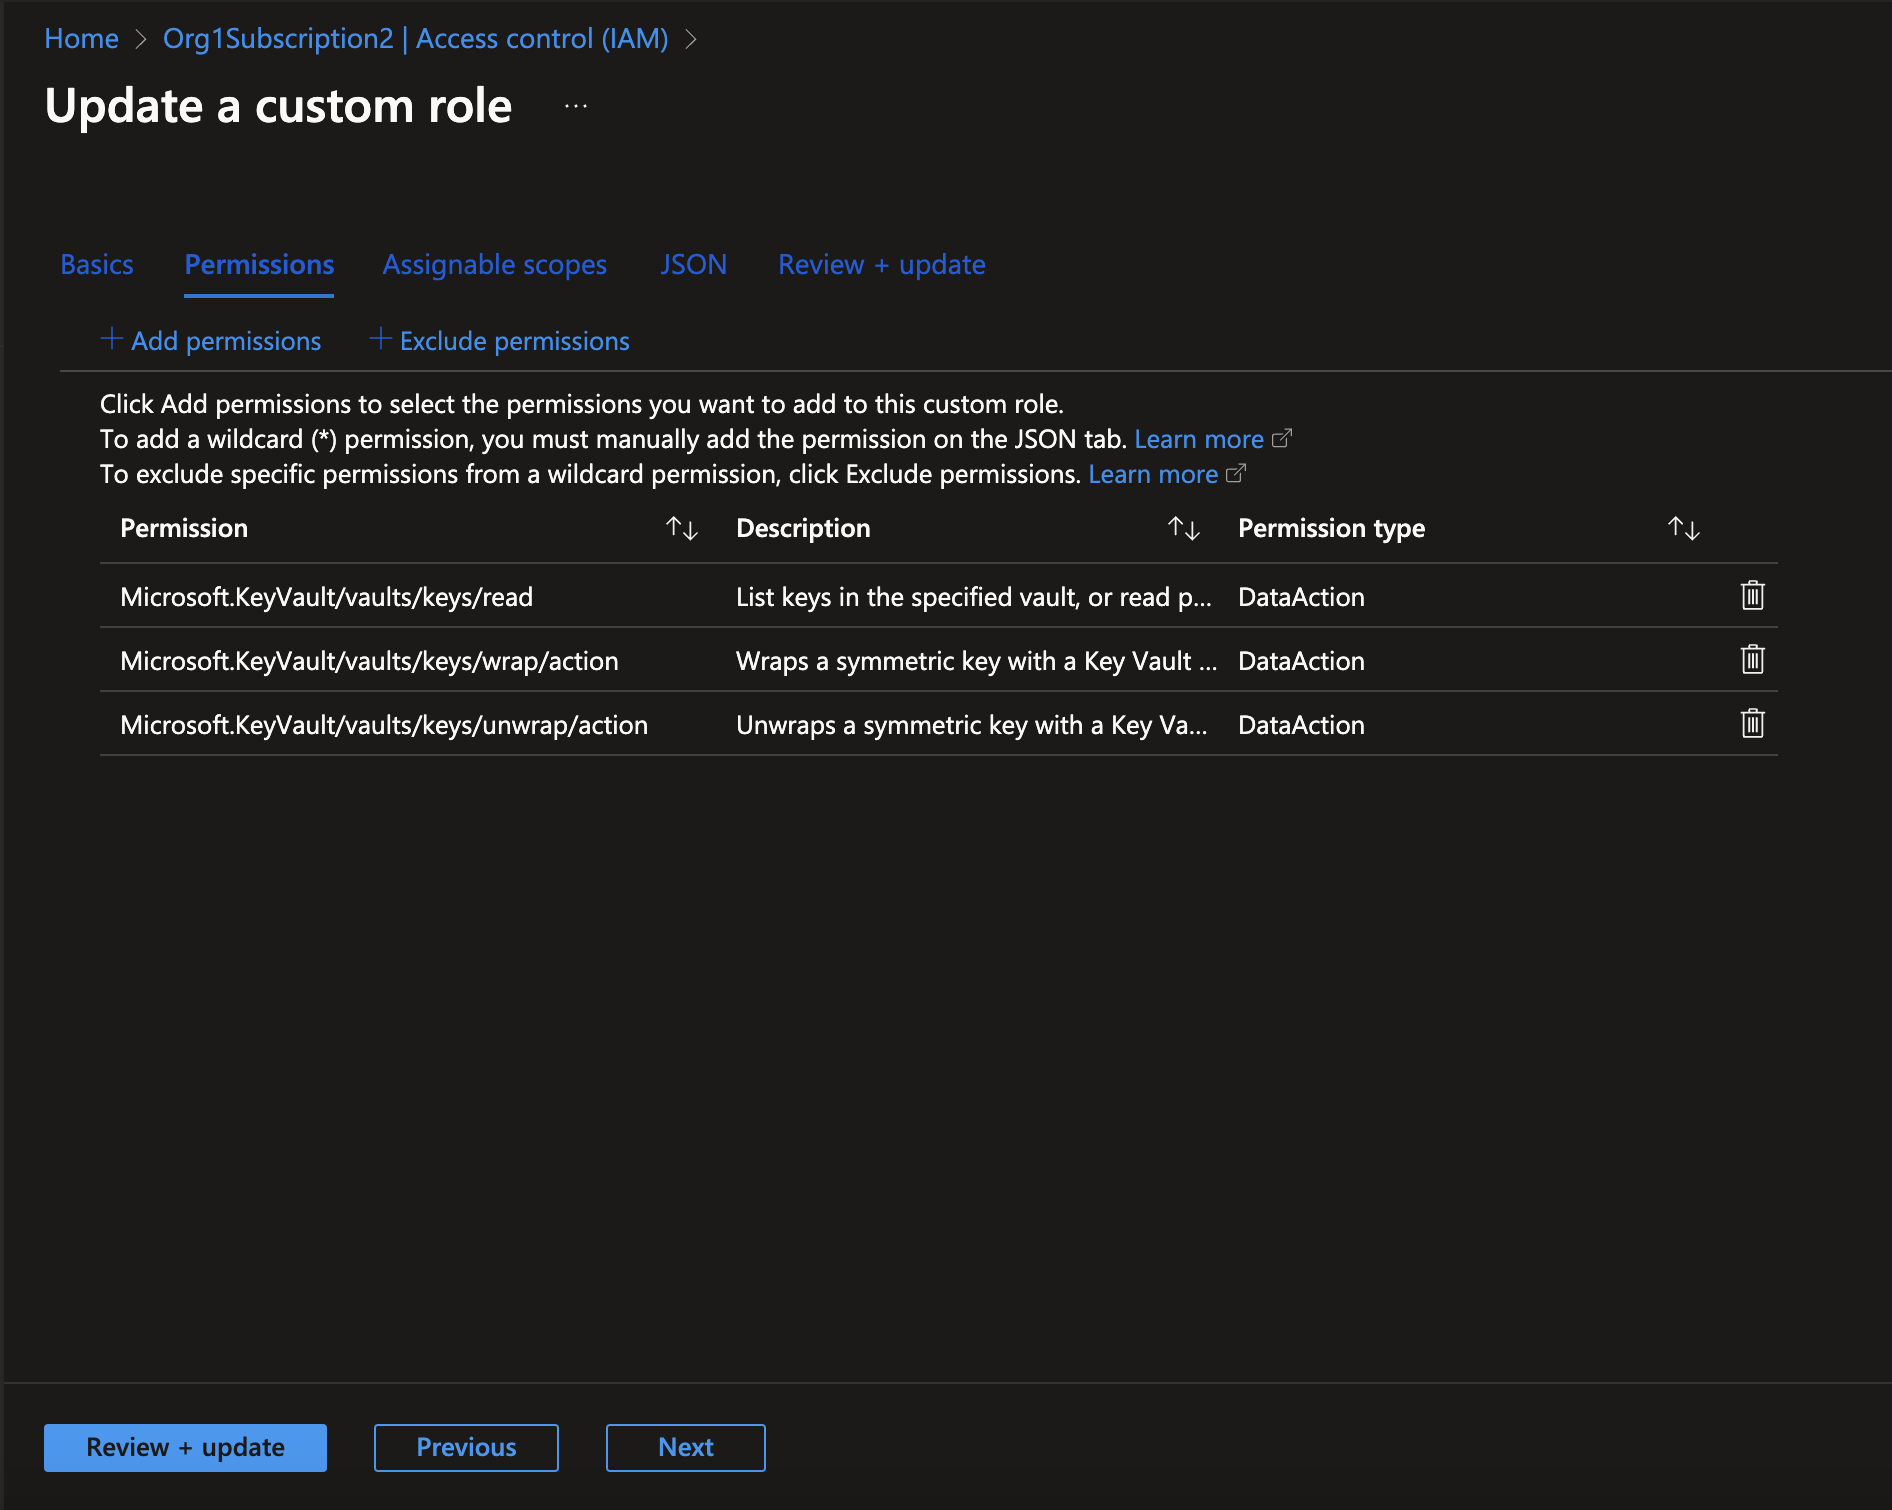 Screenshot of updating a custom role